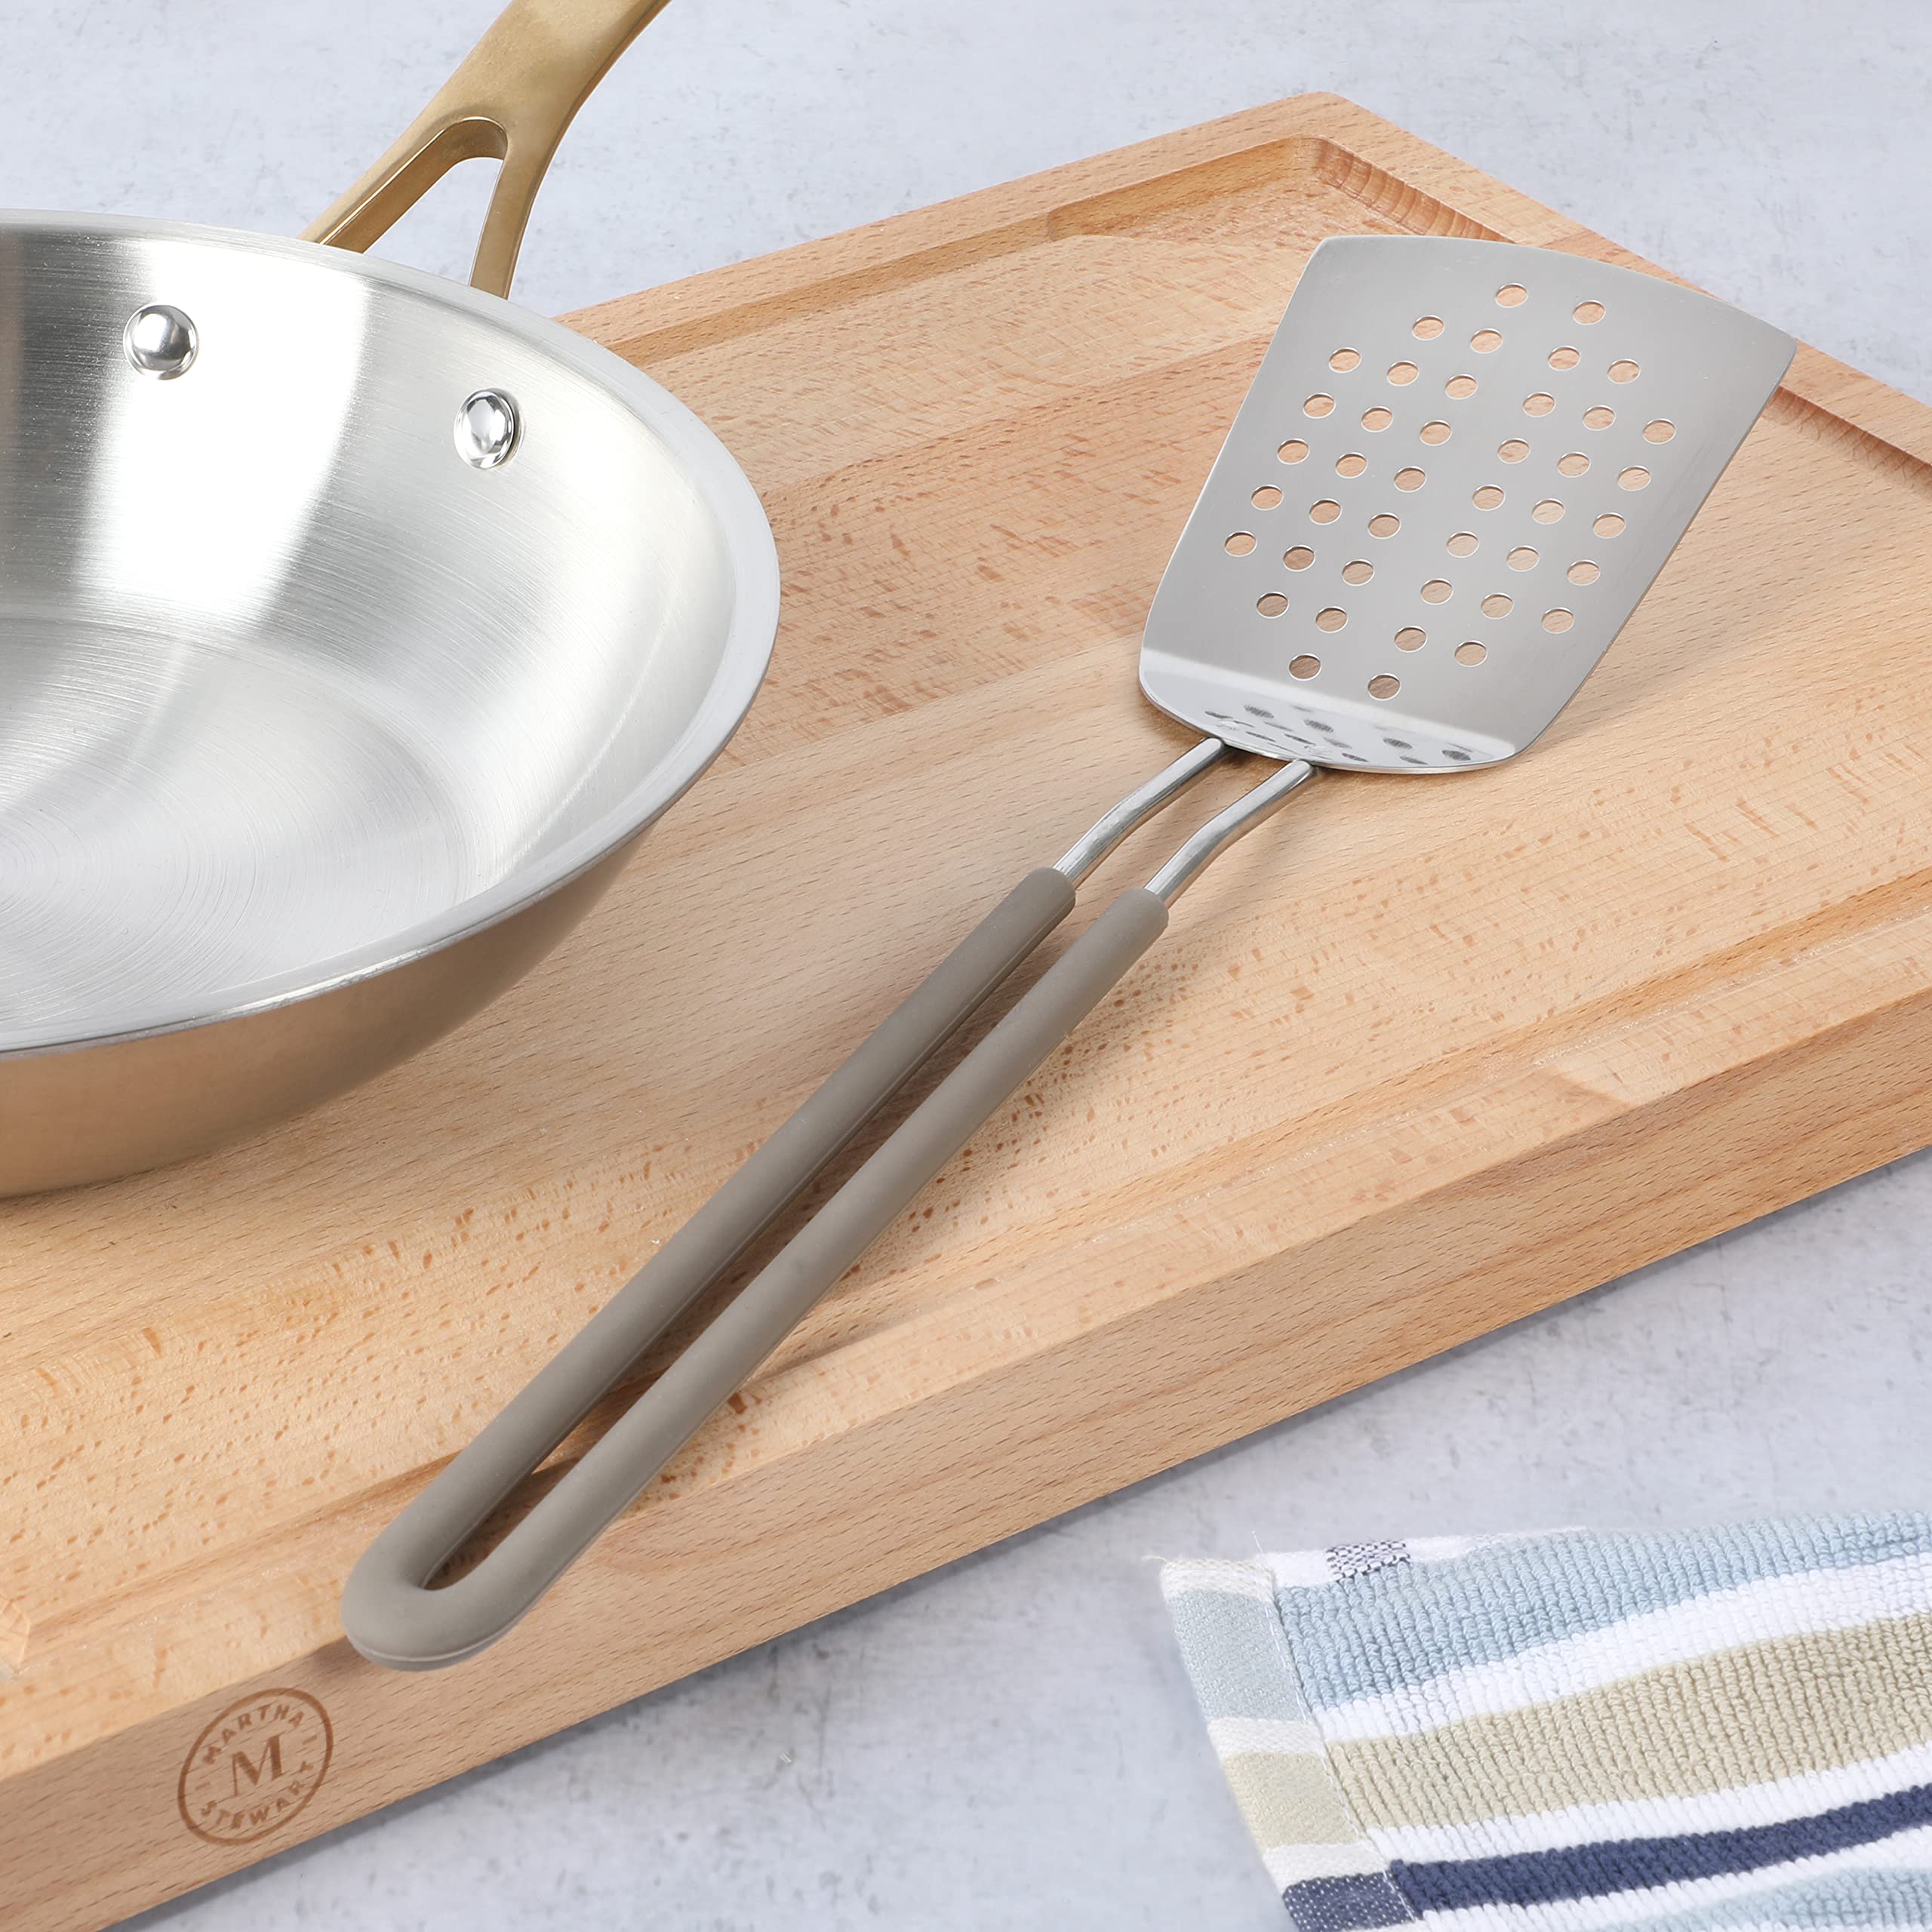 Martha Stewart 9-Piece Stainless Steel Prep & Serve Kitchen Gadget and Tool Set - Dishwasher Safe